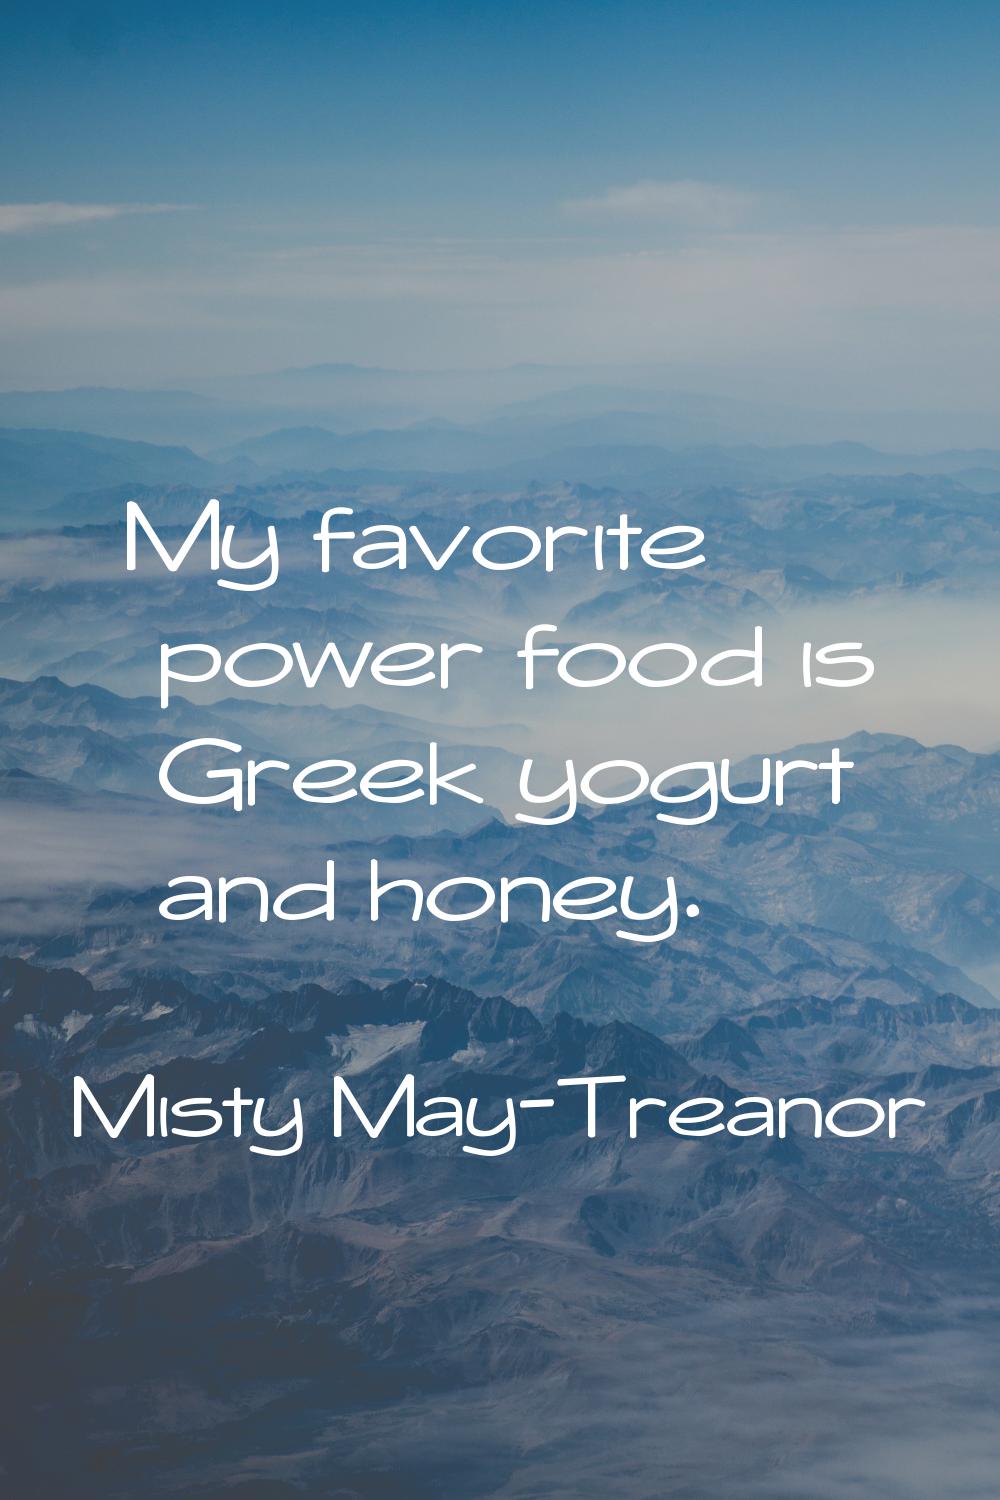 My favorite power food is Greek yogurt and honey.